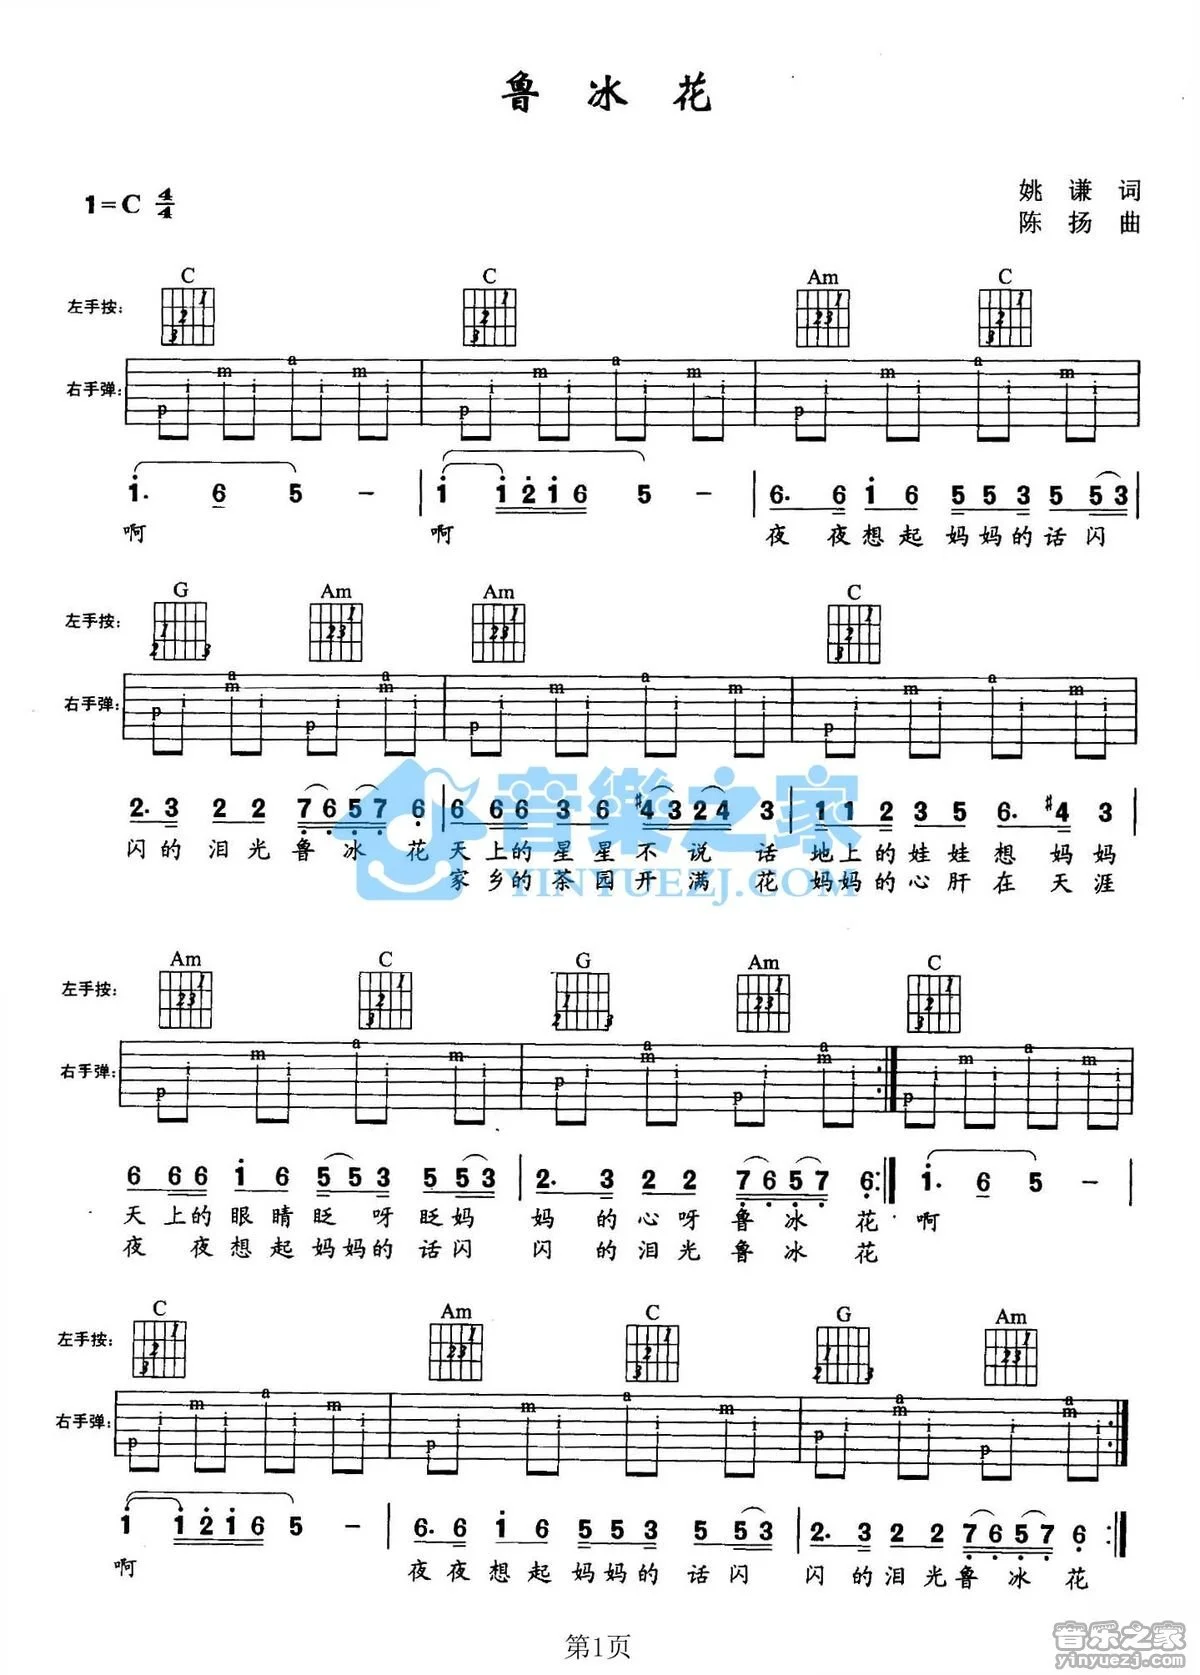 鲁冰花-完整版双手简谱预览1-钢琴谱文件（五线谱、双手简谱、数字谱、Midi、PDF）免费下载